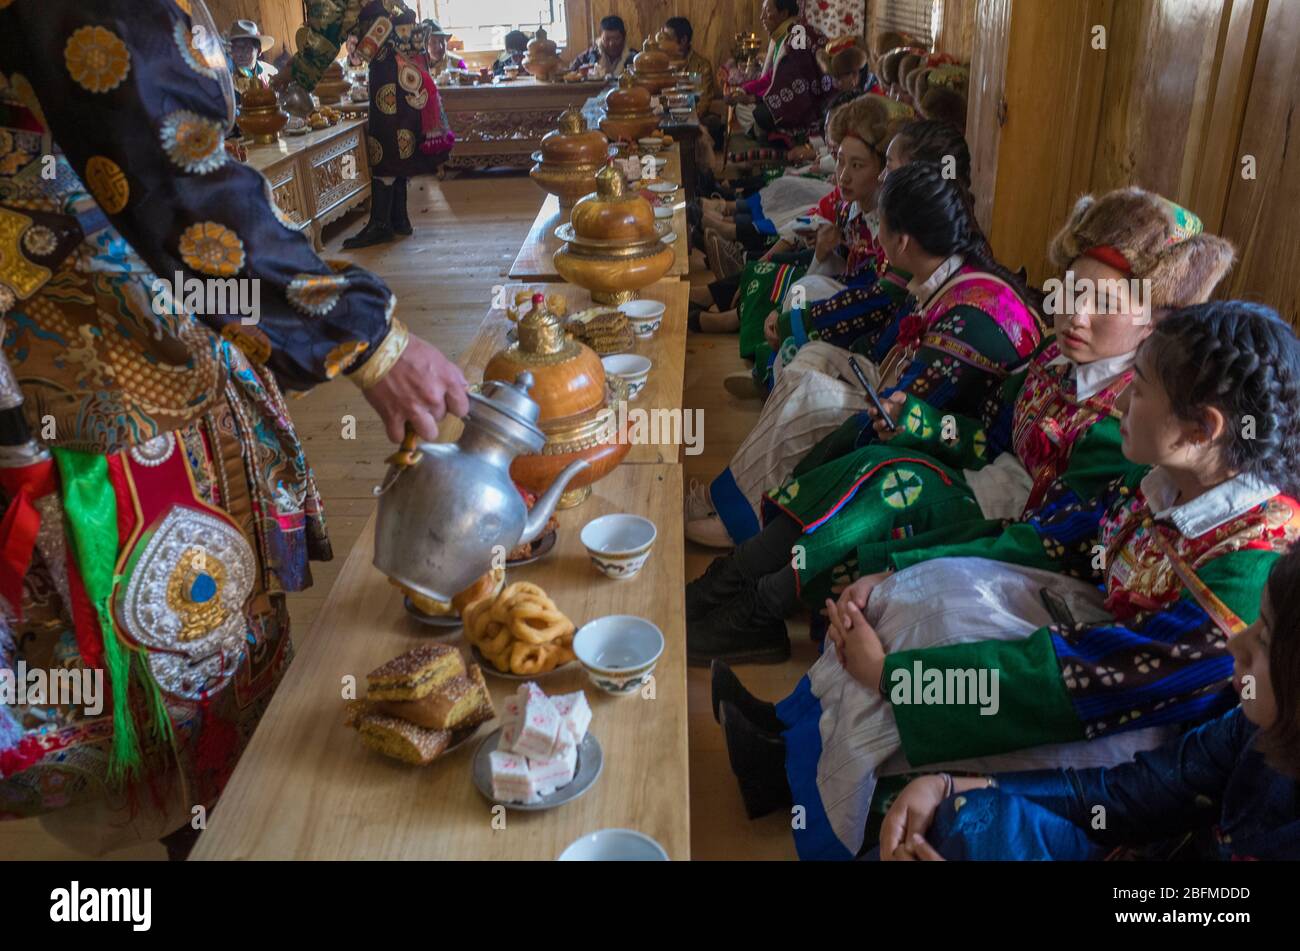 Hombre sirviendo comida a las damas de honor en una fiesta de matrimonio budista. Shangri La China 2019 Foto de stock